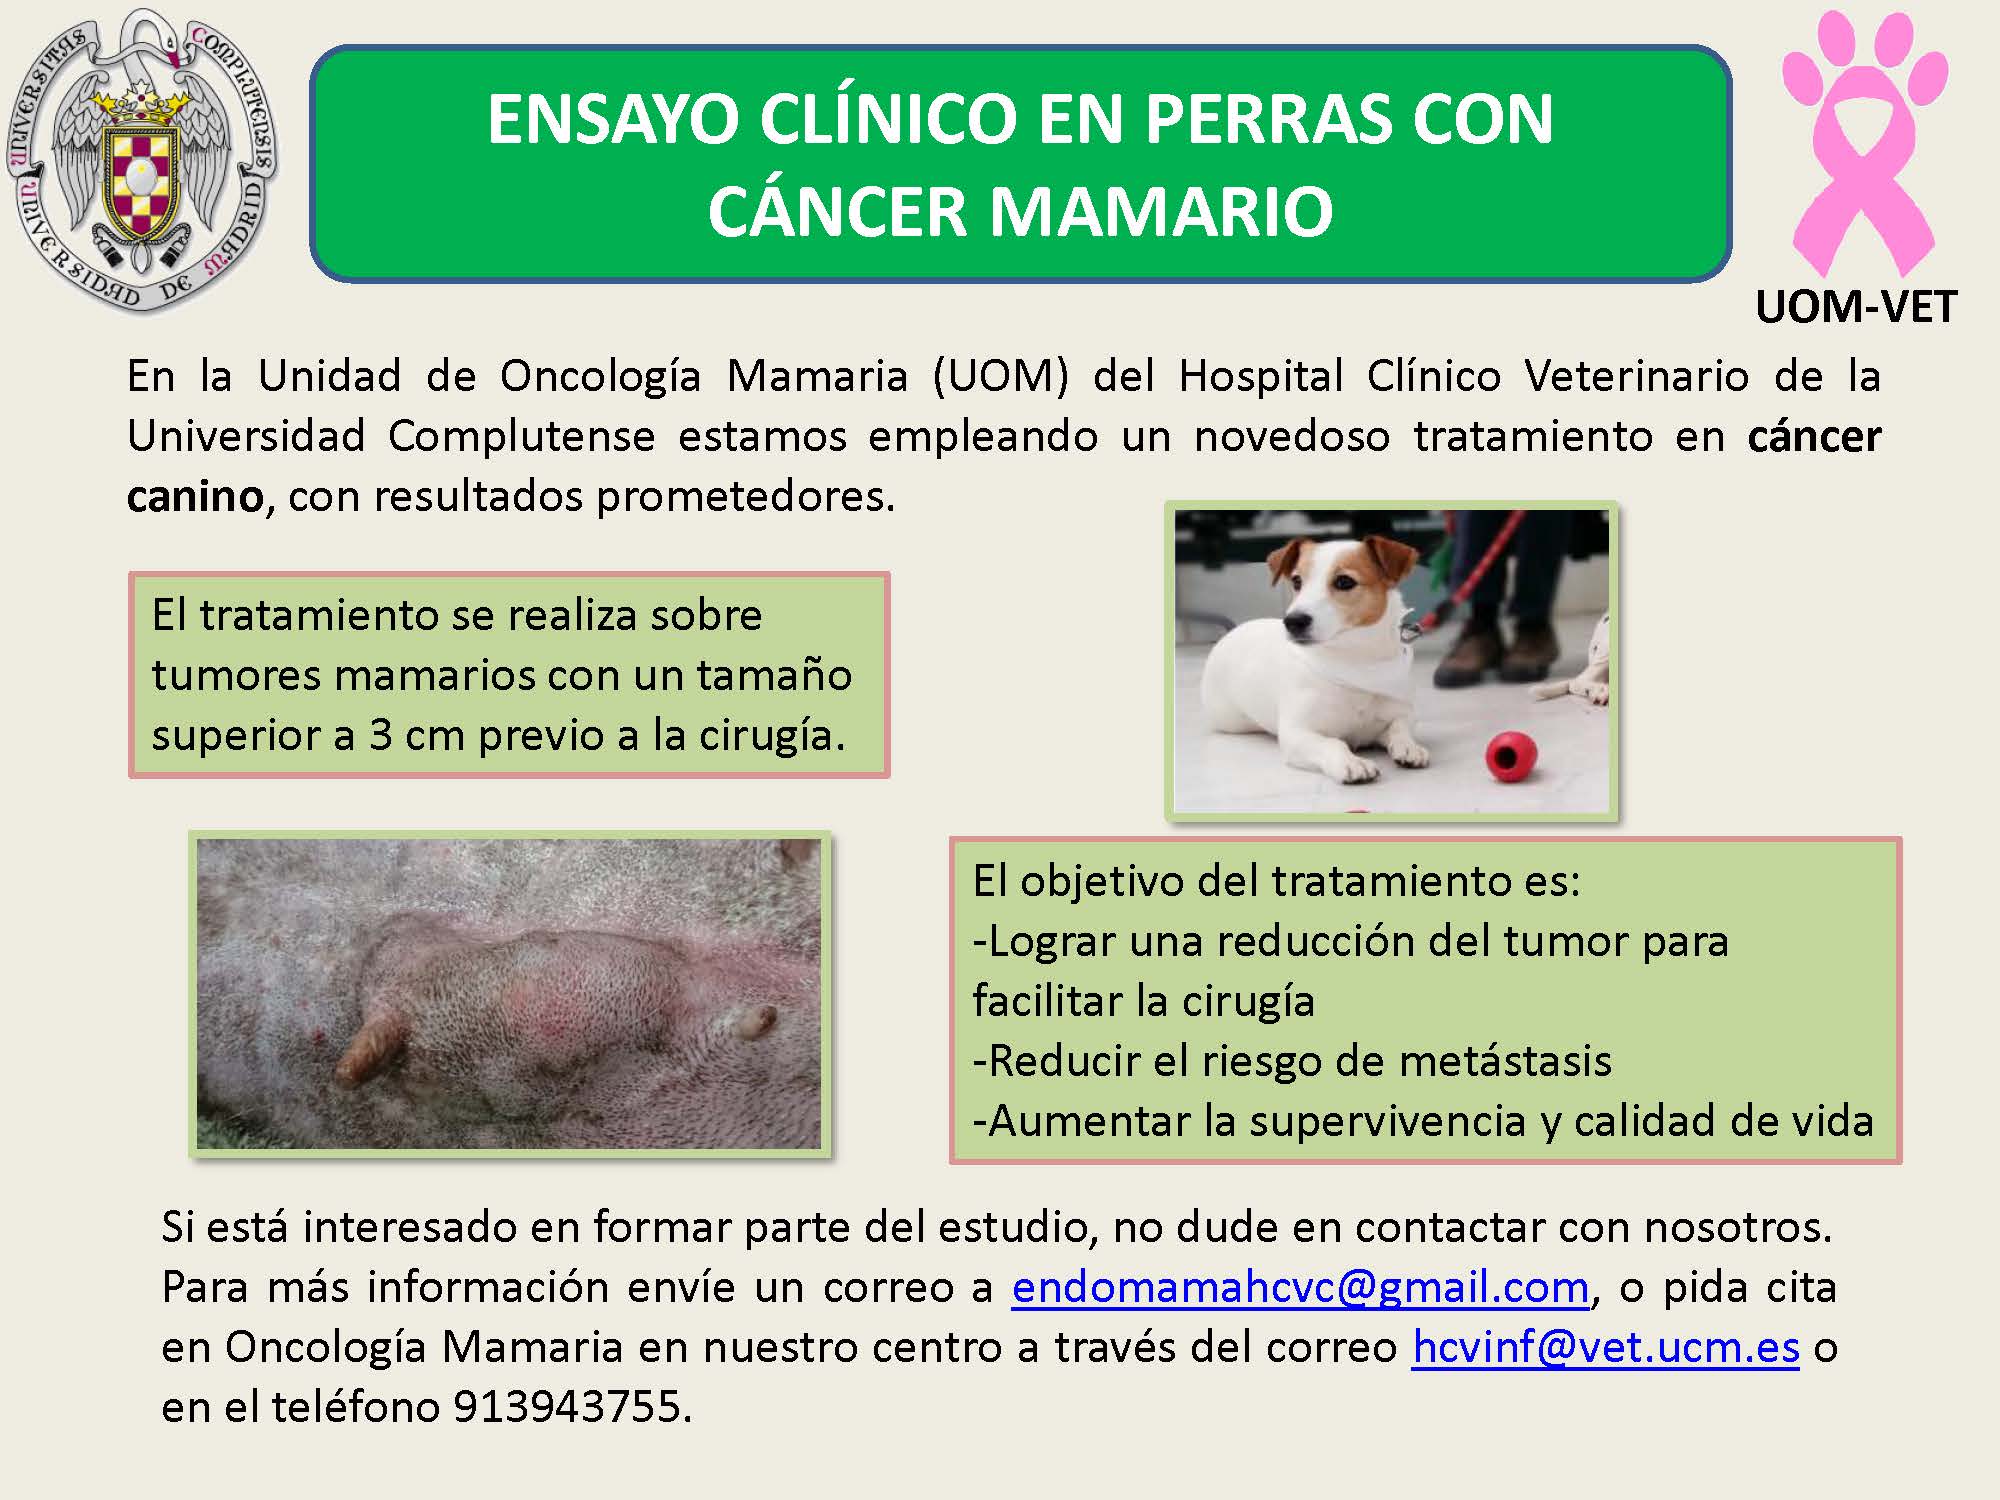 Ensayo clínico en perras con cáncer mamario